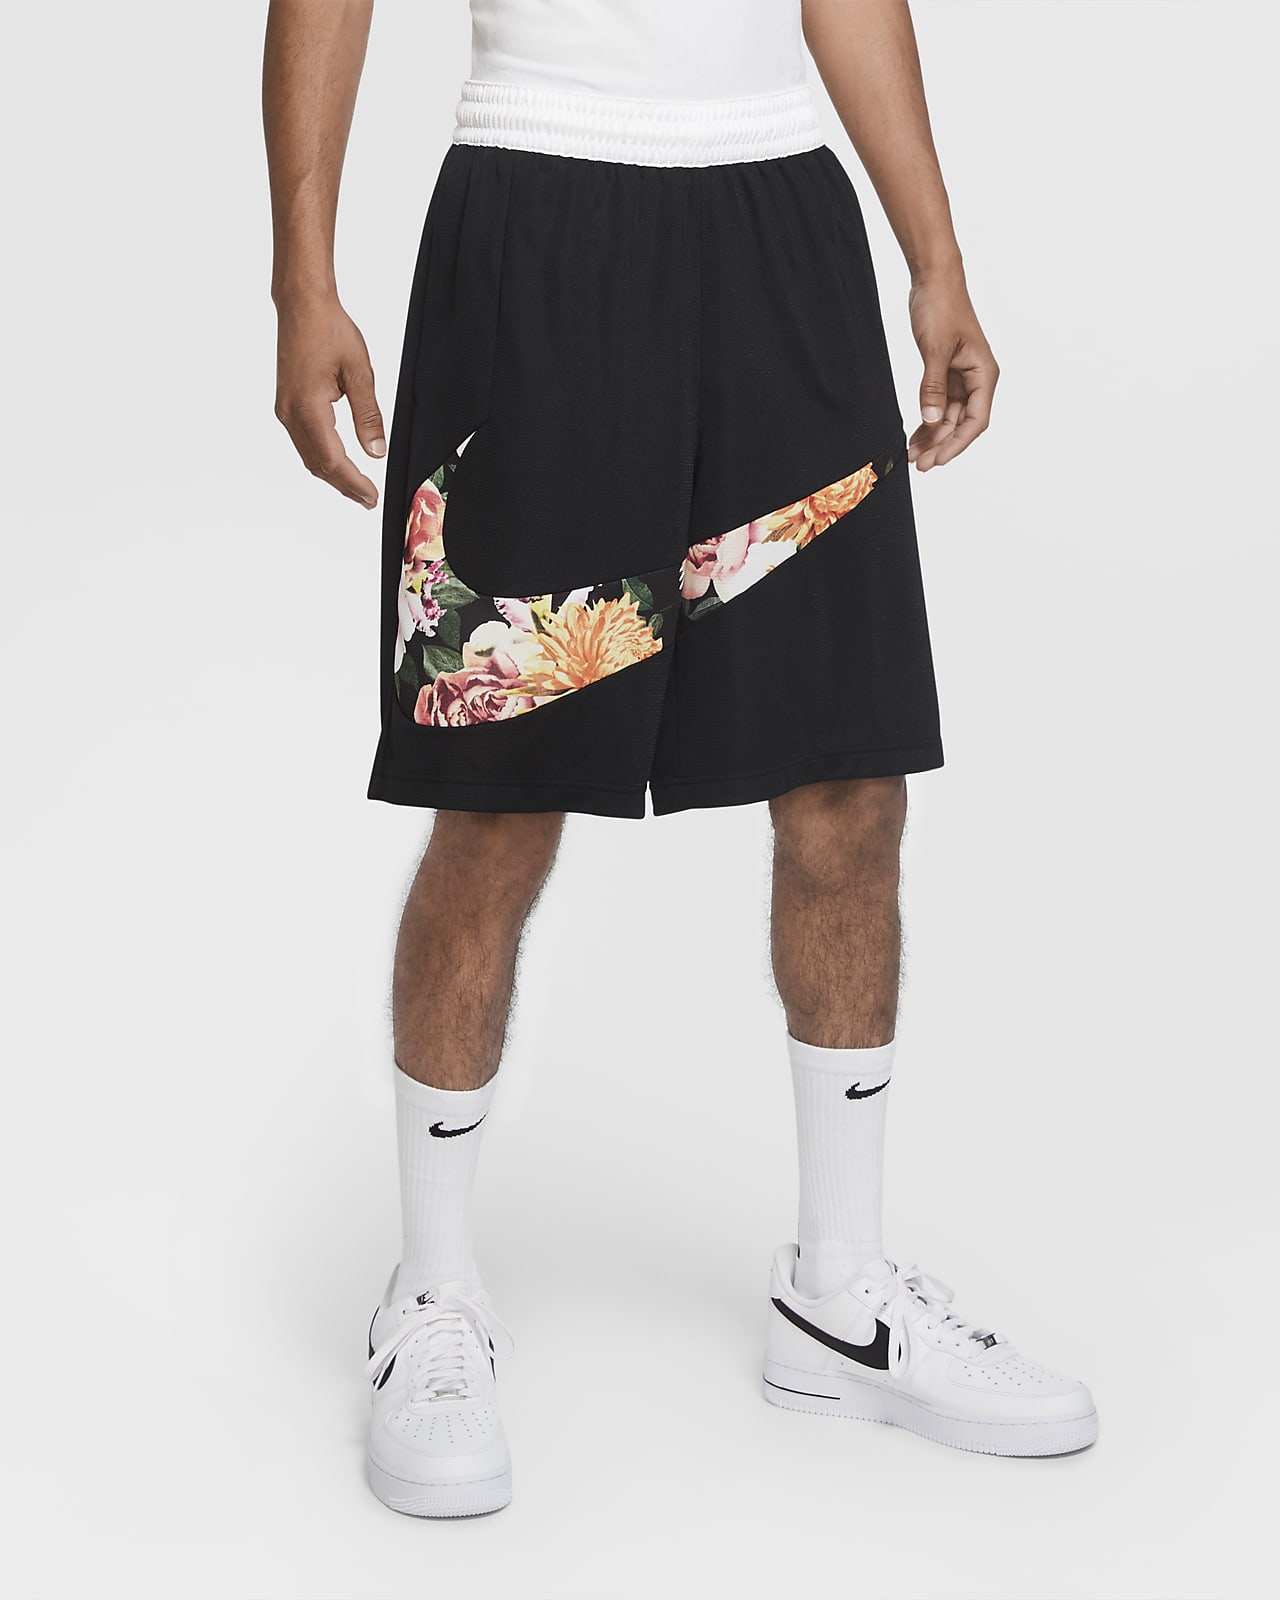 Nike Floral HBR Men's Basketball Shorts 